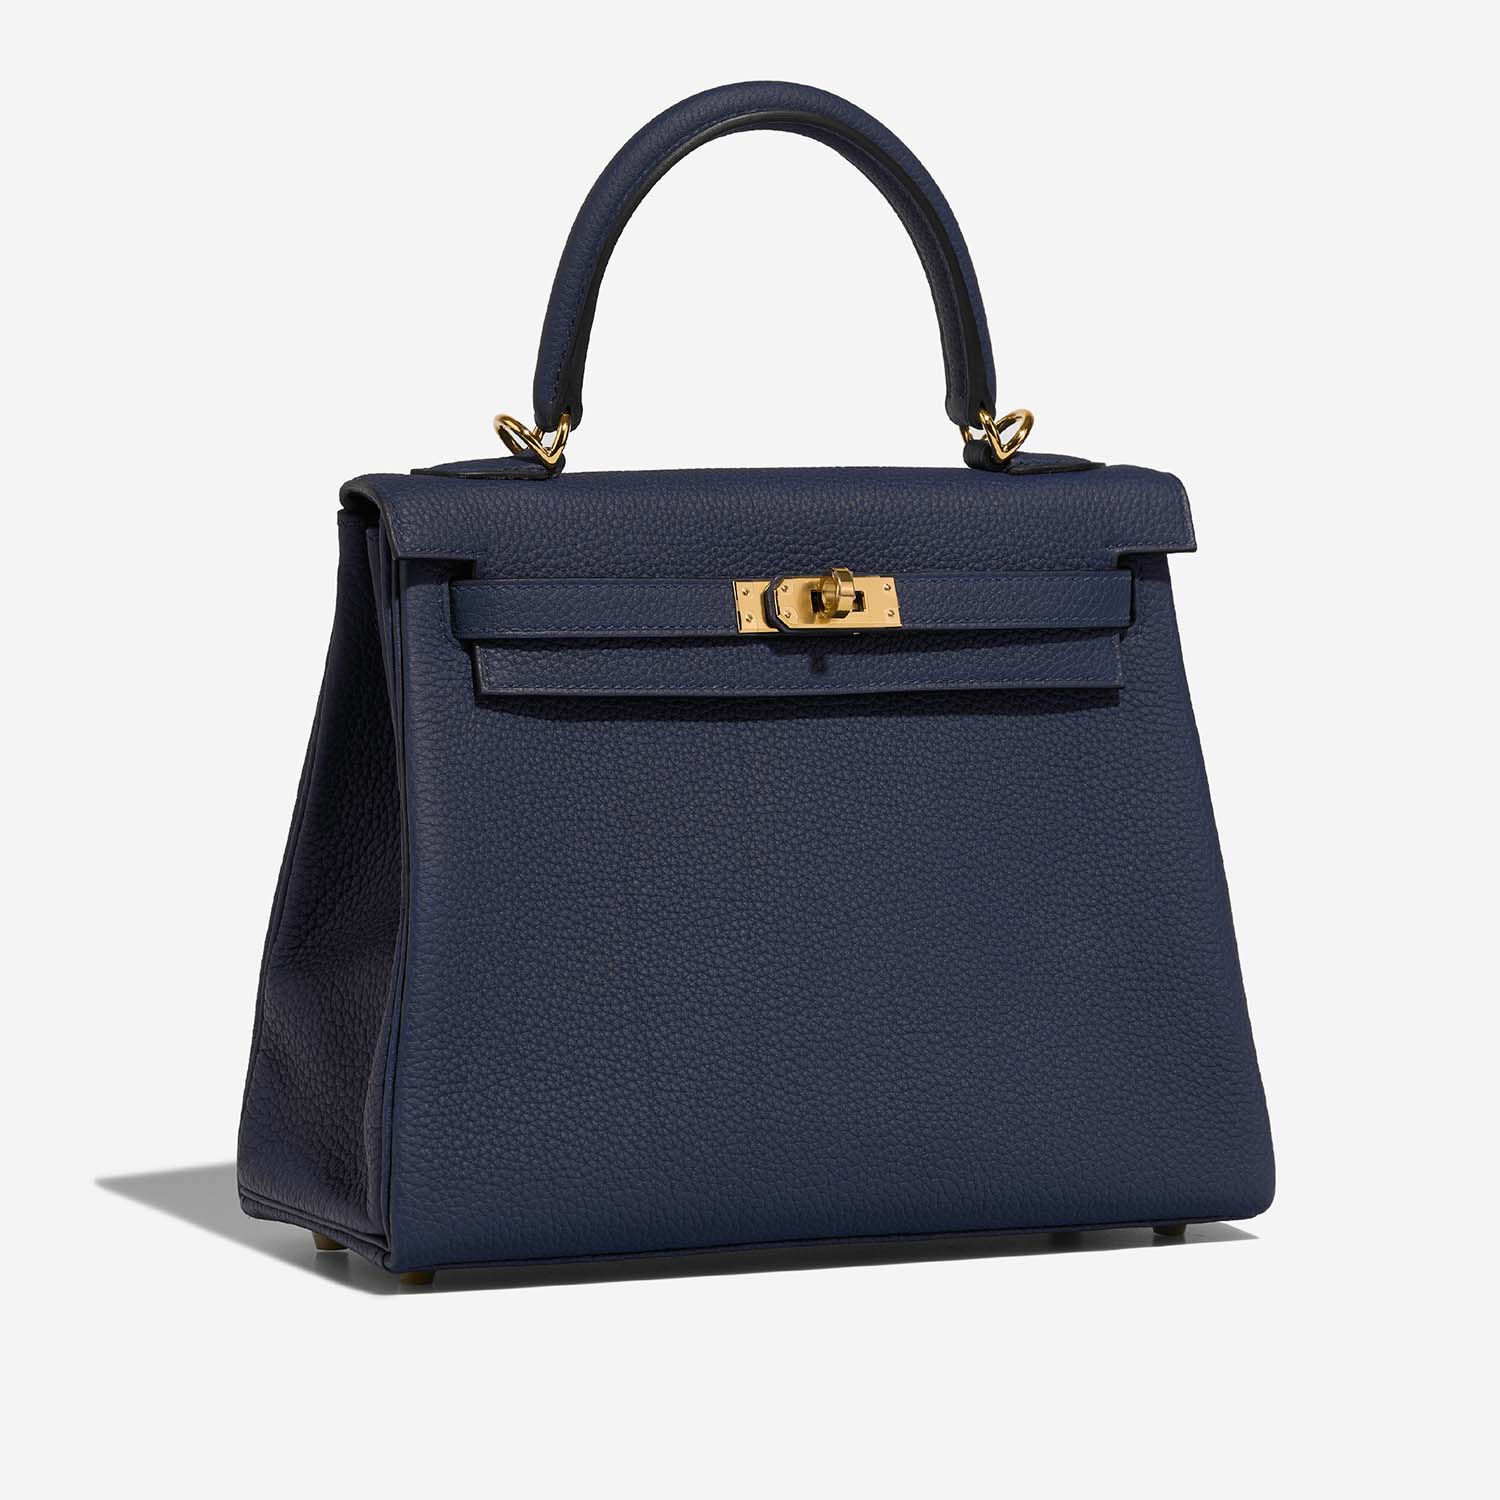 Hermès Kelly 25 BlueSaphir Side Front | Verkaufen Sie Ihre Designer-Tasche auf Saclab.com